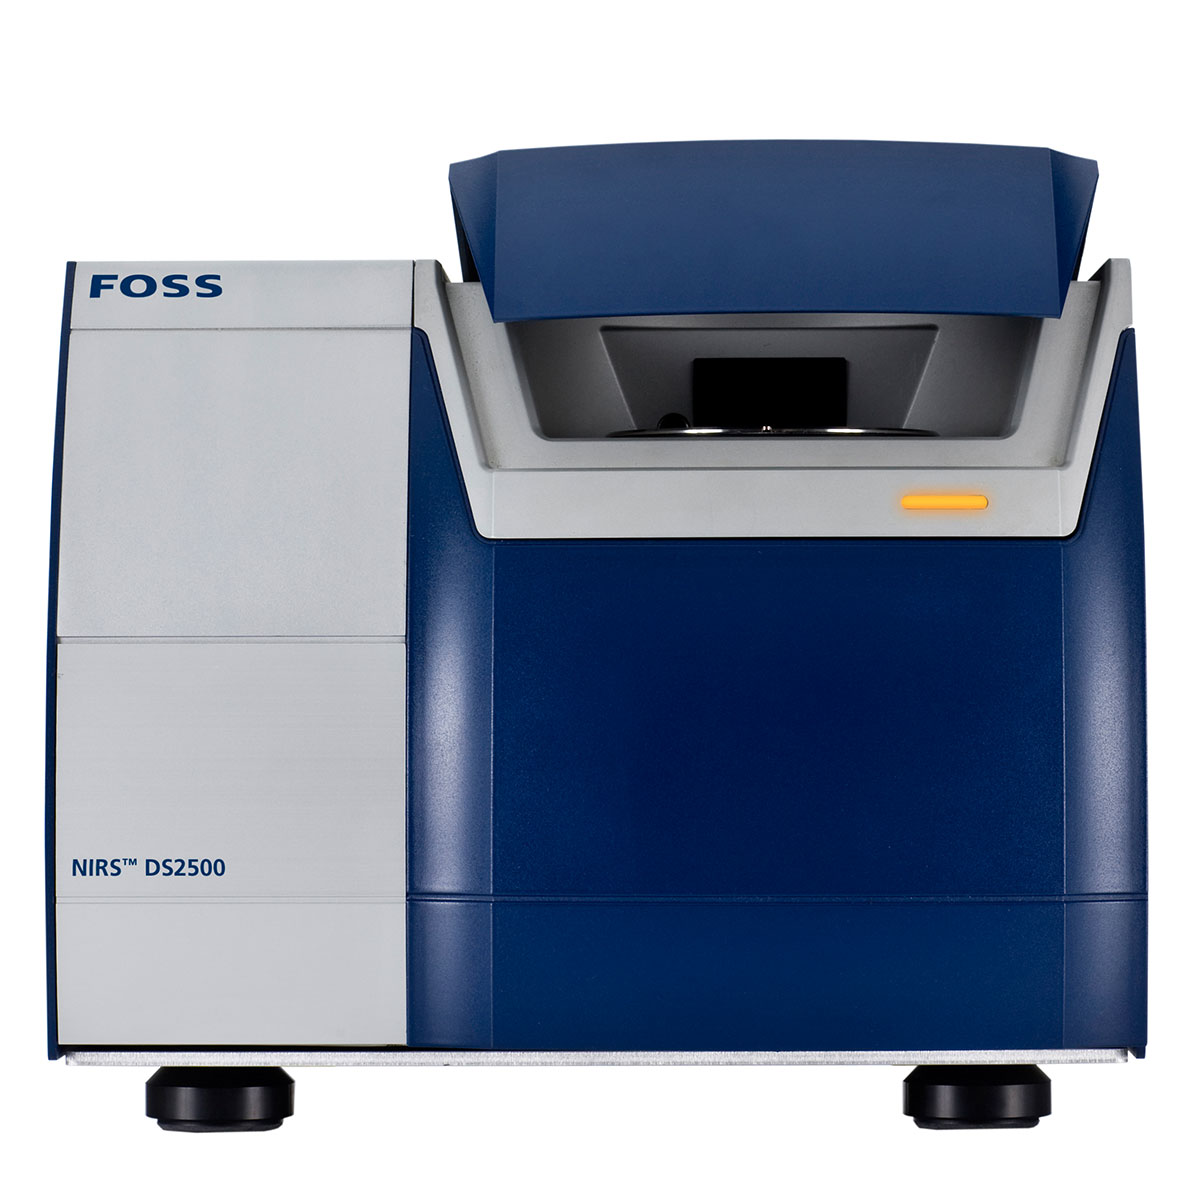 FOSS NIRS DS2500 | Süt Analiz Cihazı | Tekafos